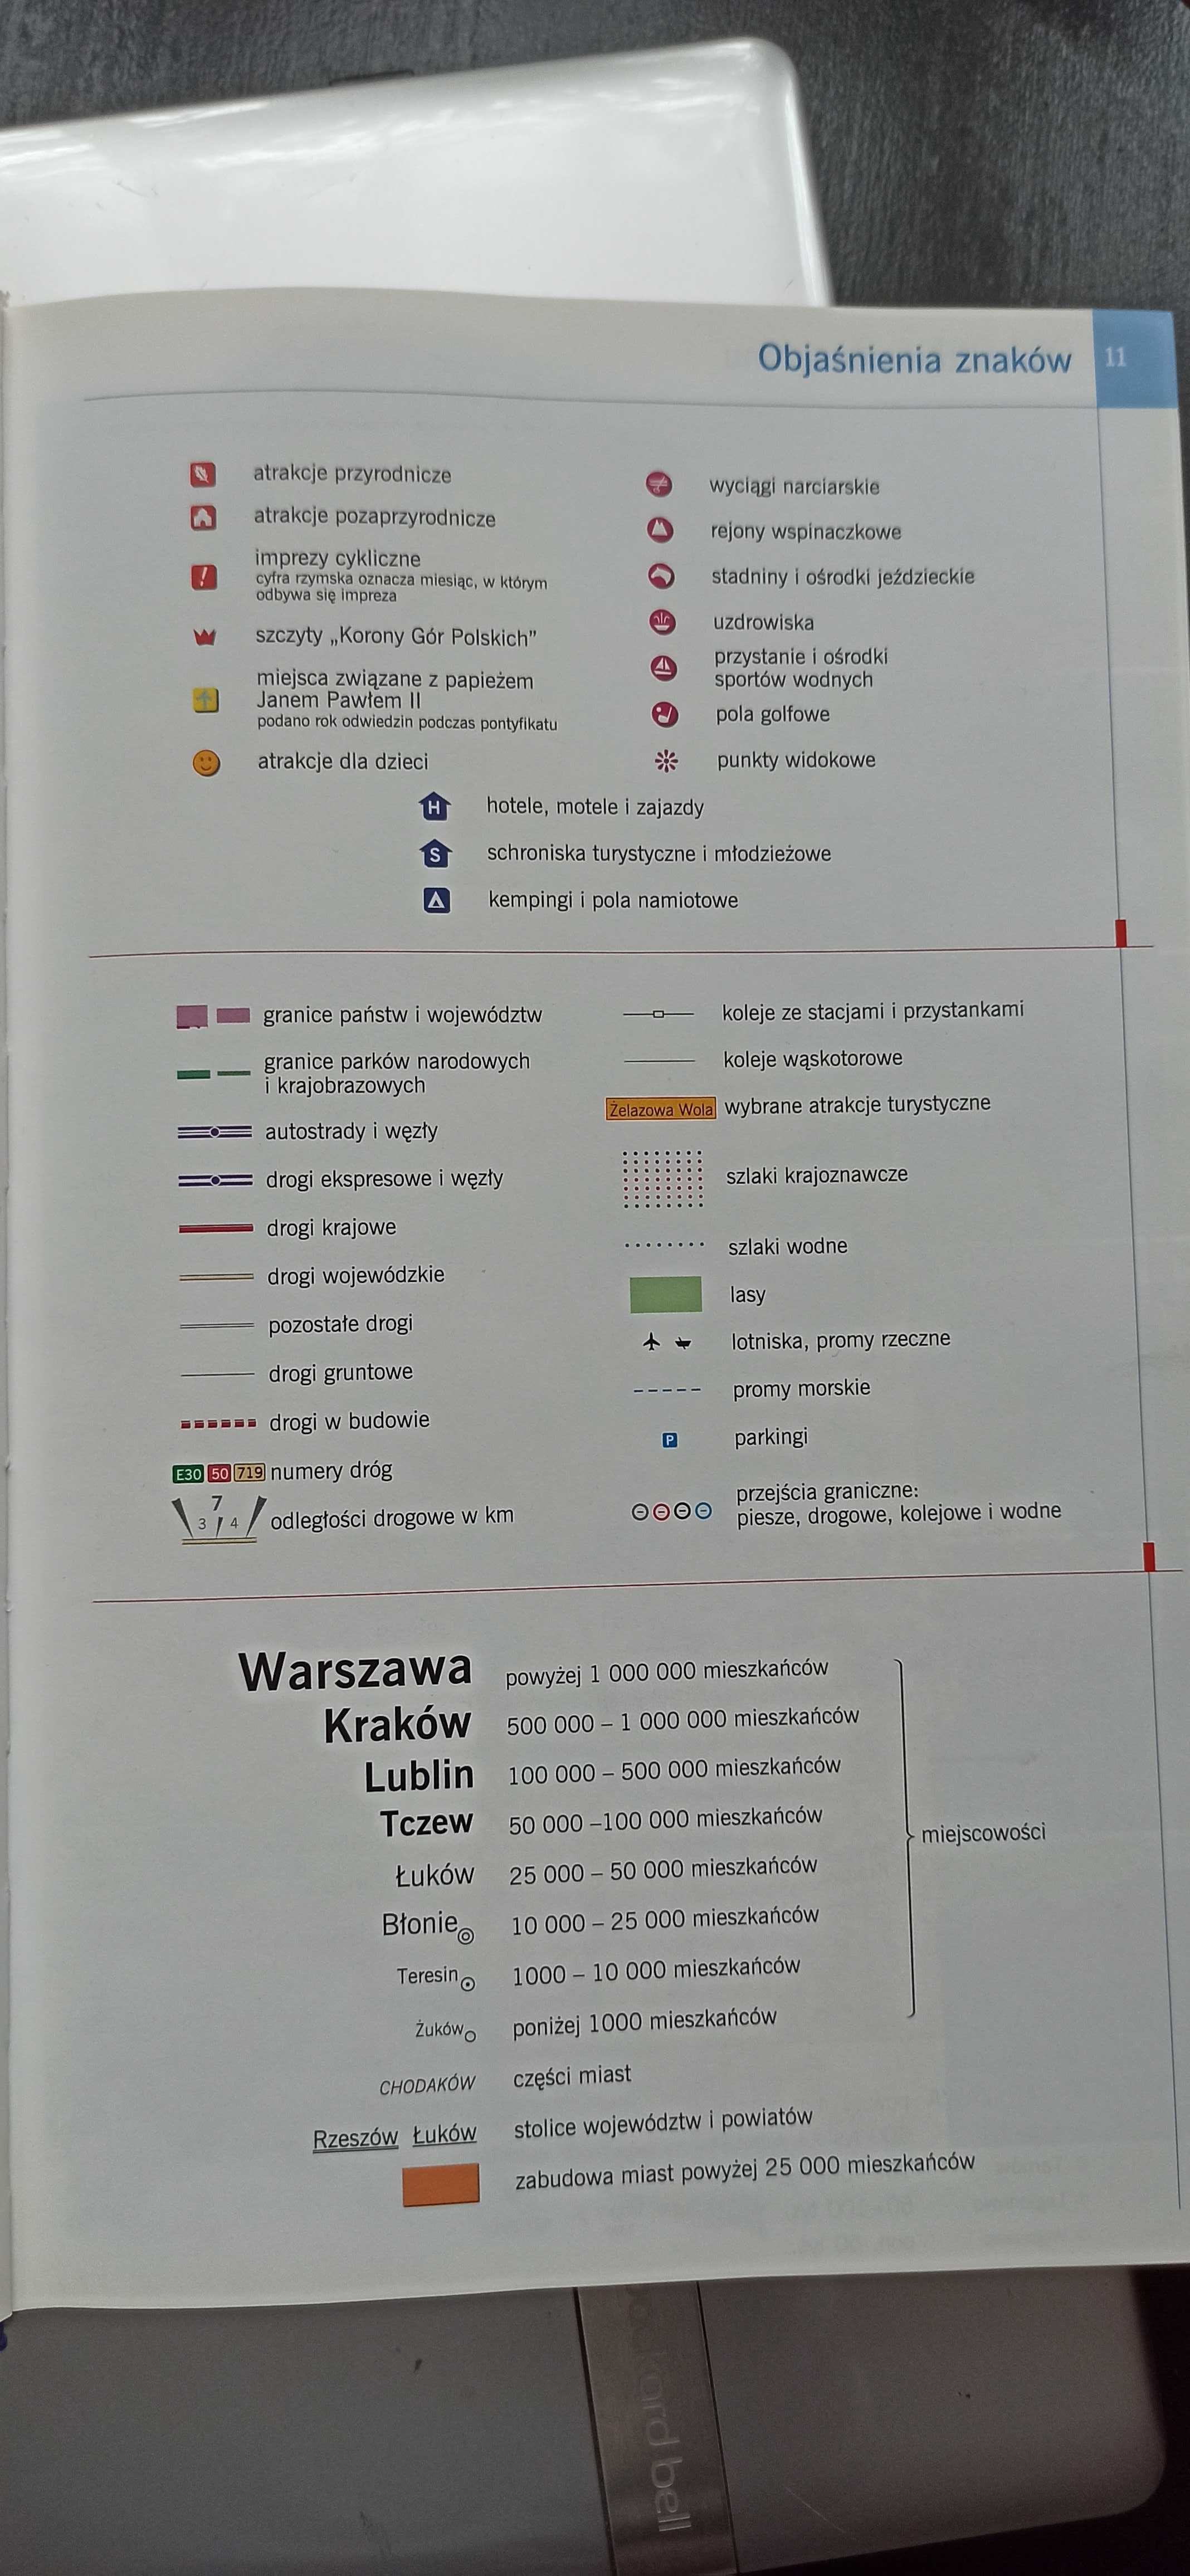 Turystyczny atlas Polski